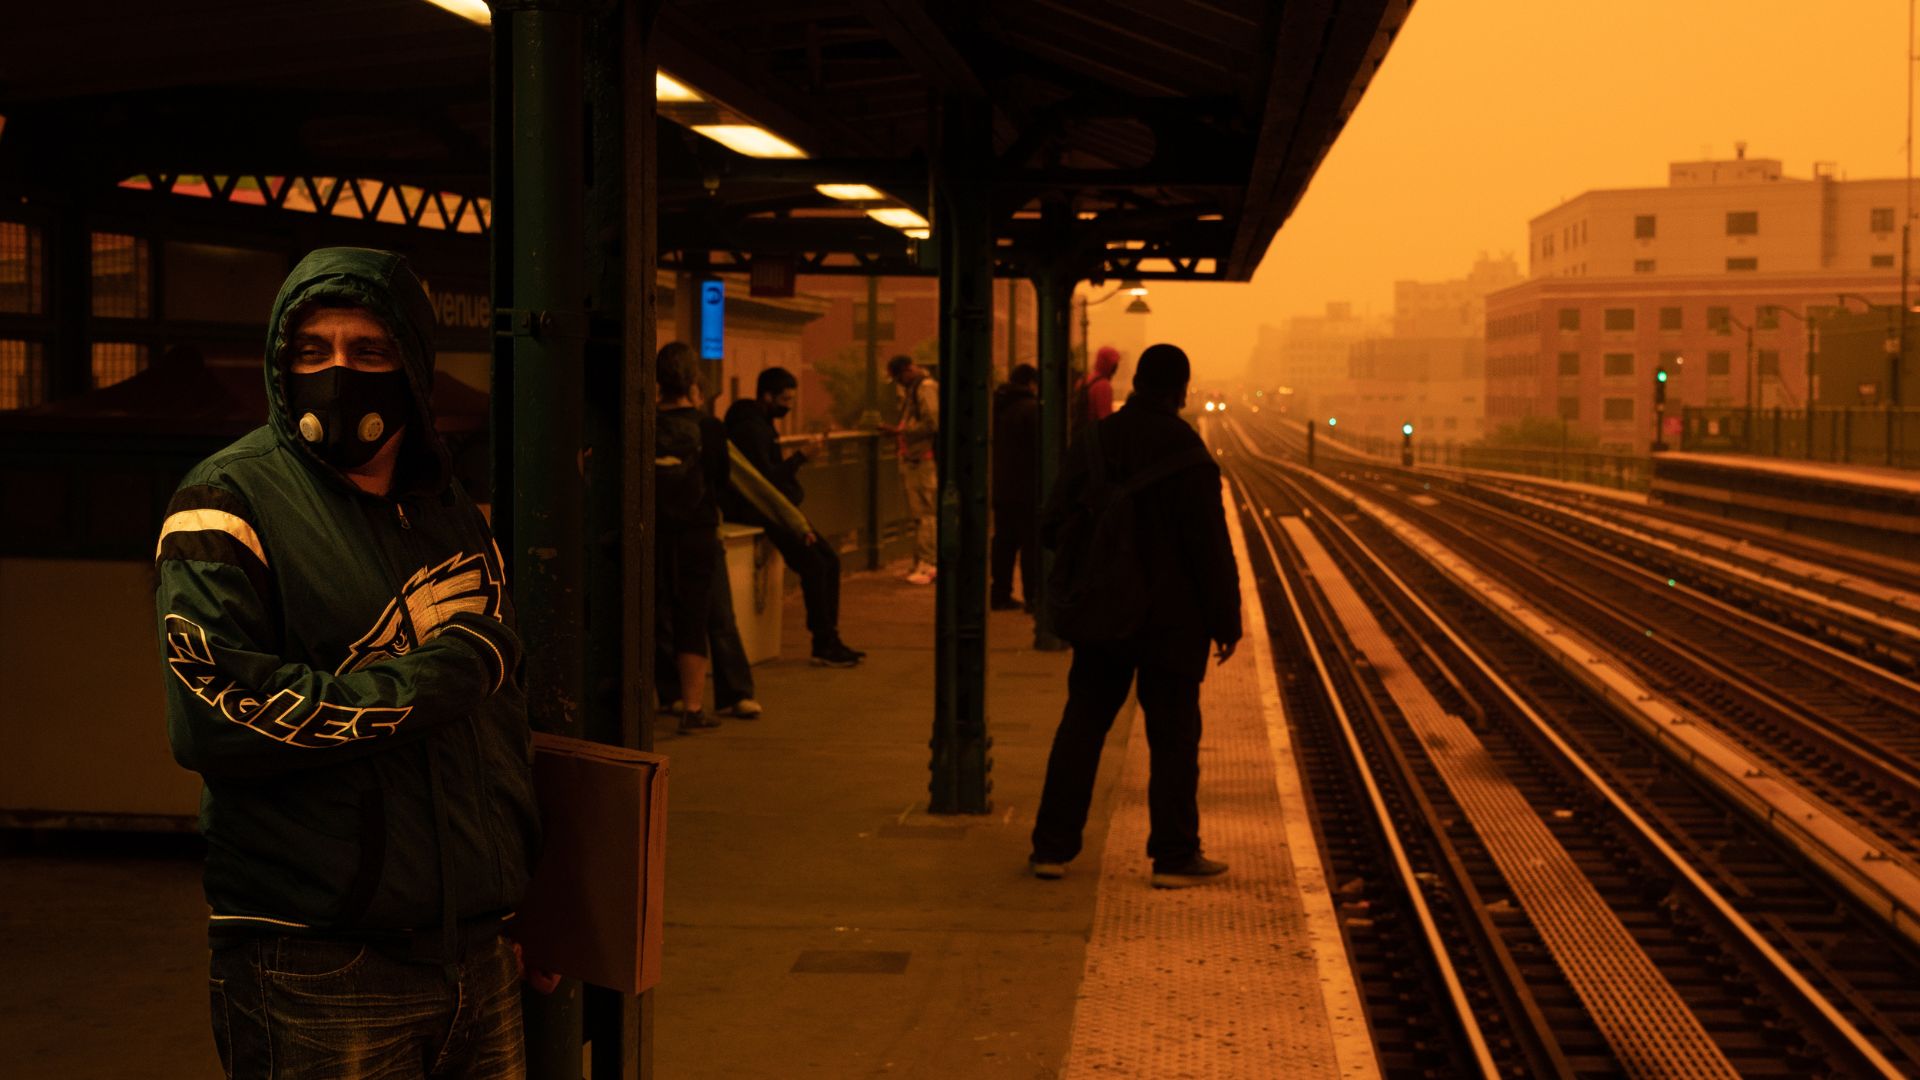 photo montre des personnes attendant dans une station de métro hors sol dans le bronx.  Un homme au premier plan porte un respirateur à usage intensif, et le ciel et l'air entourant la station apparaissent en orange foncé